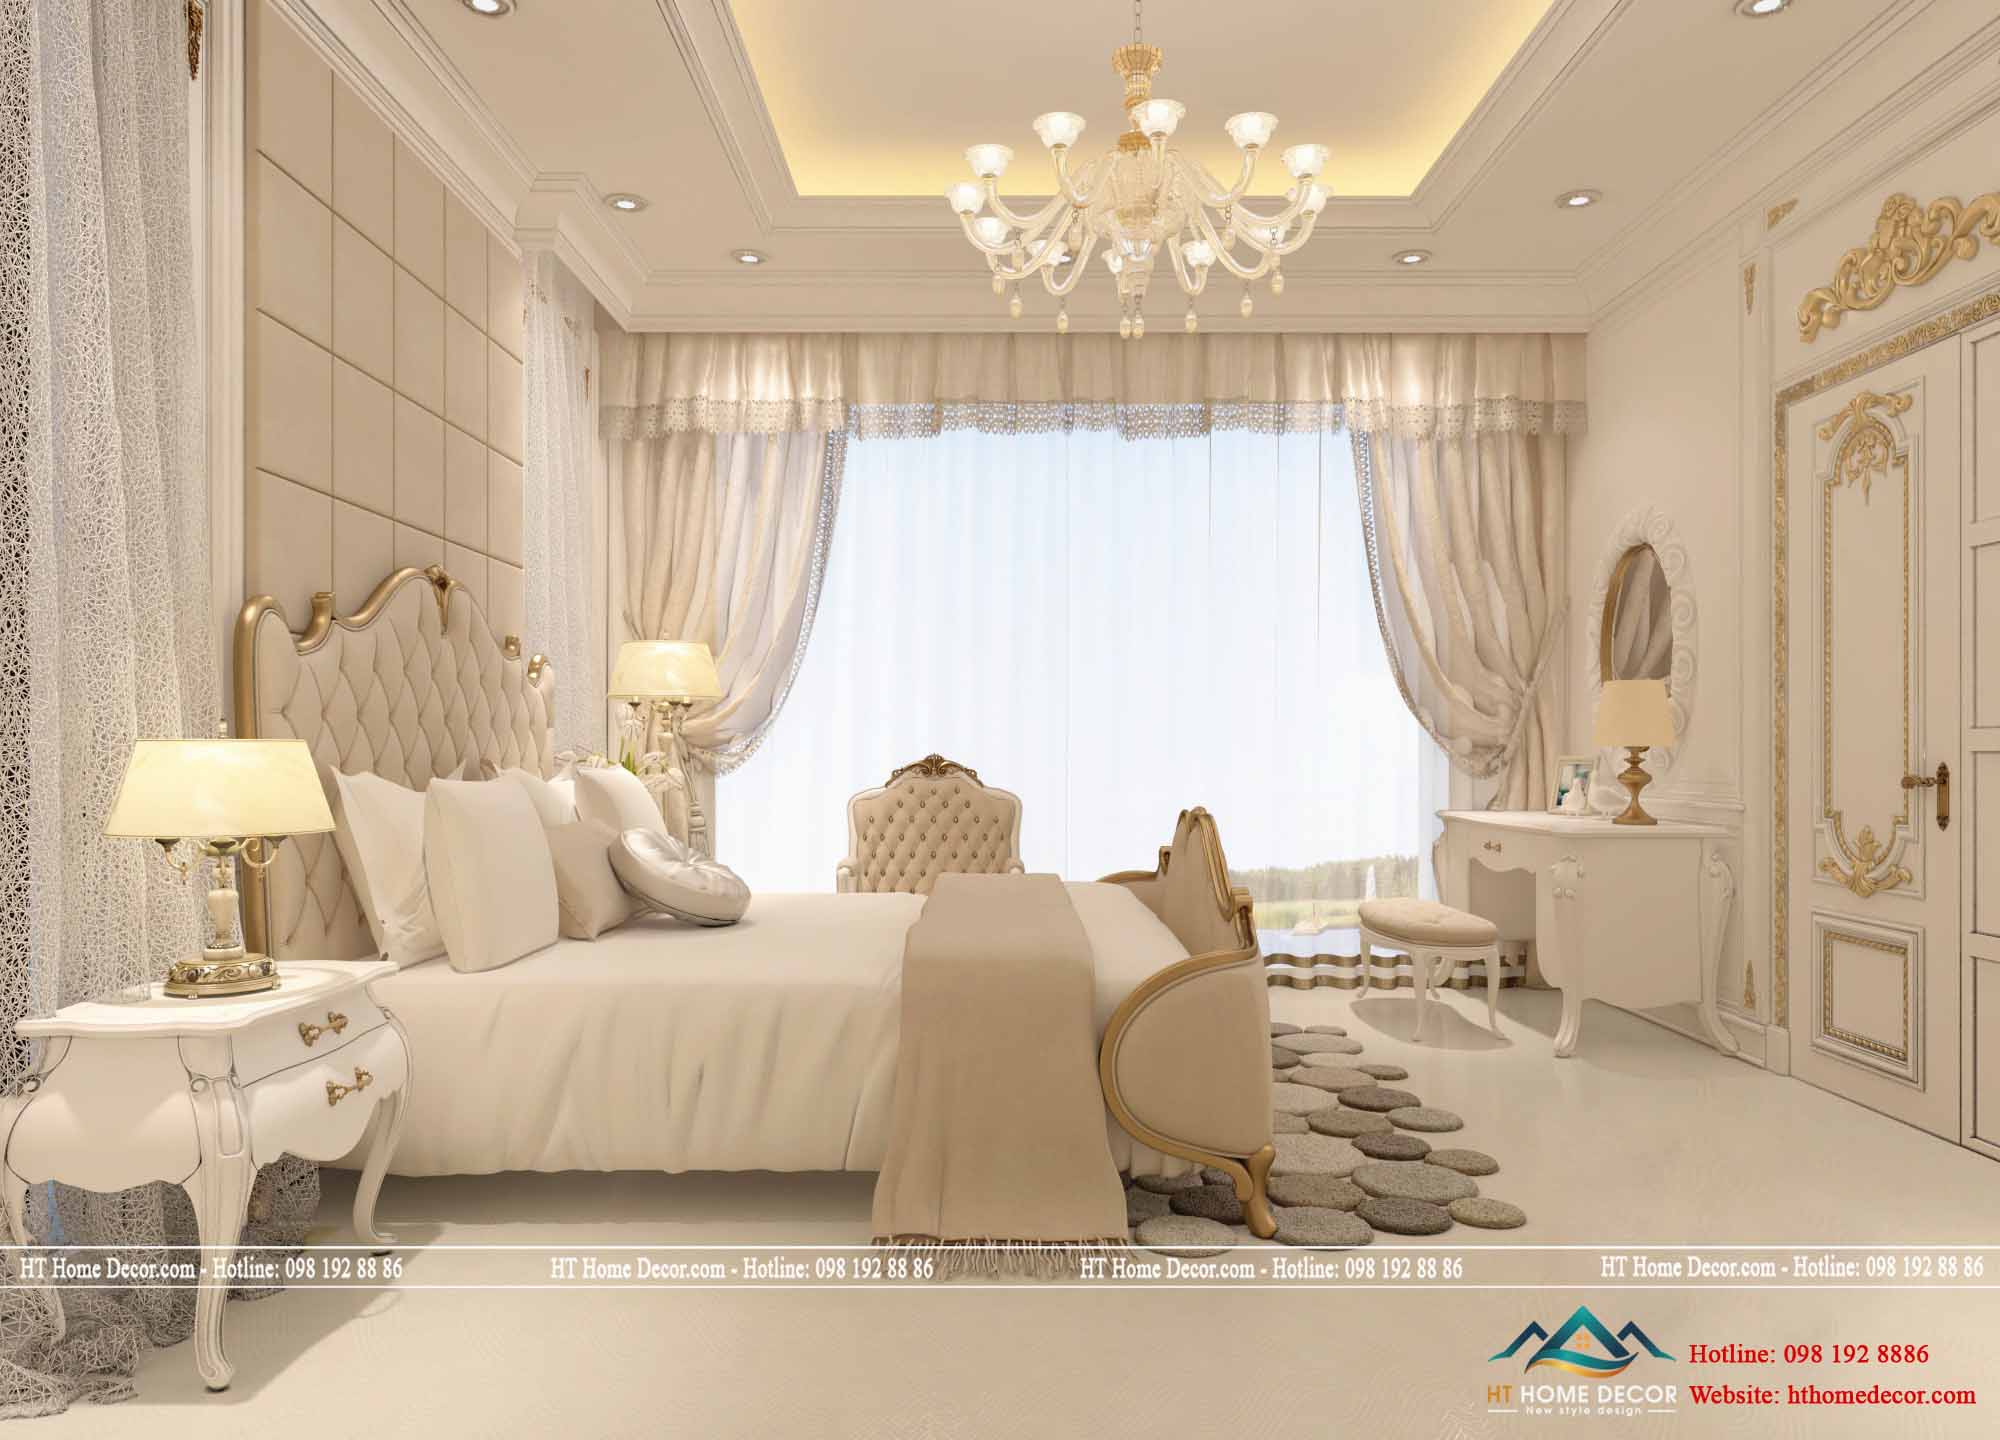 Hầu hết các căn phòng ngủ thường sử dụng mẫu giường ngủ khác nhau nhưng lại có chất liệu giống nhau và có không gian nhìn ra bên ngoài.